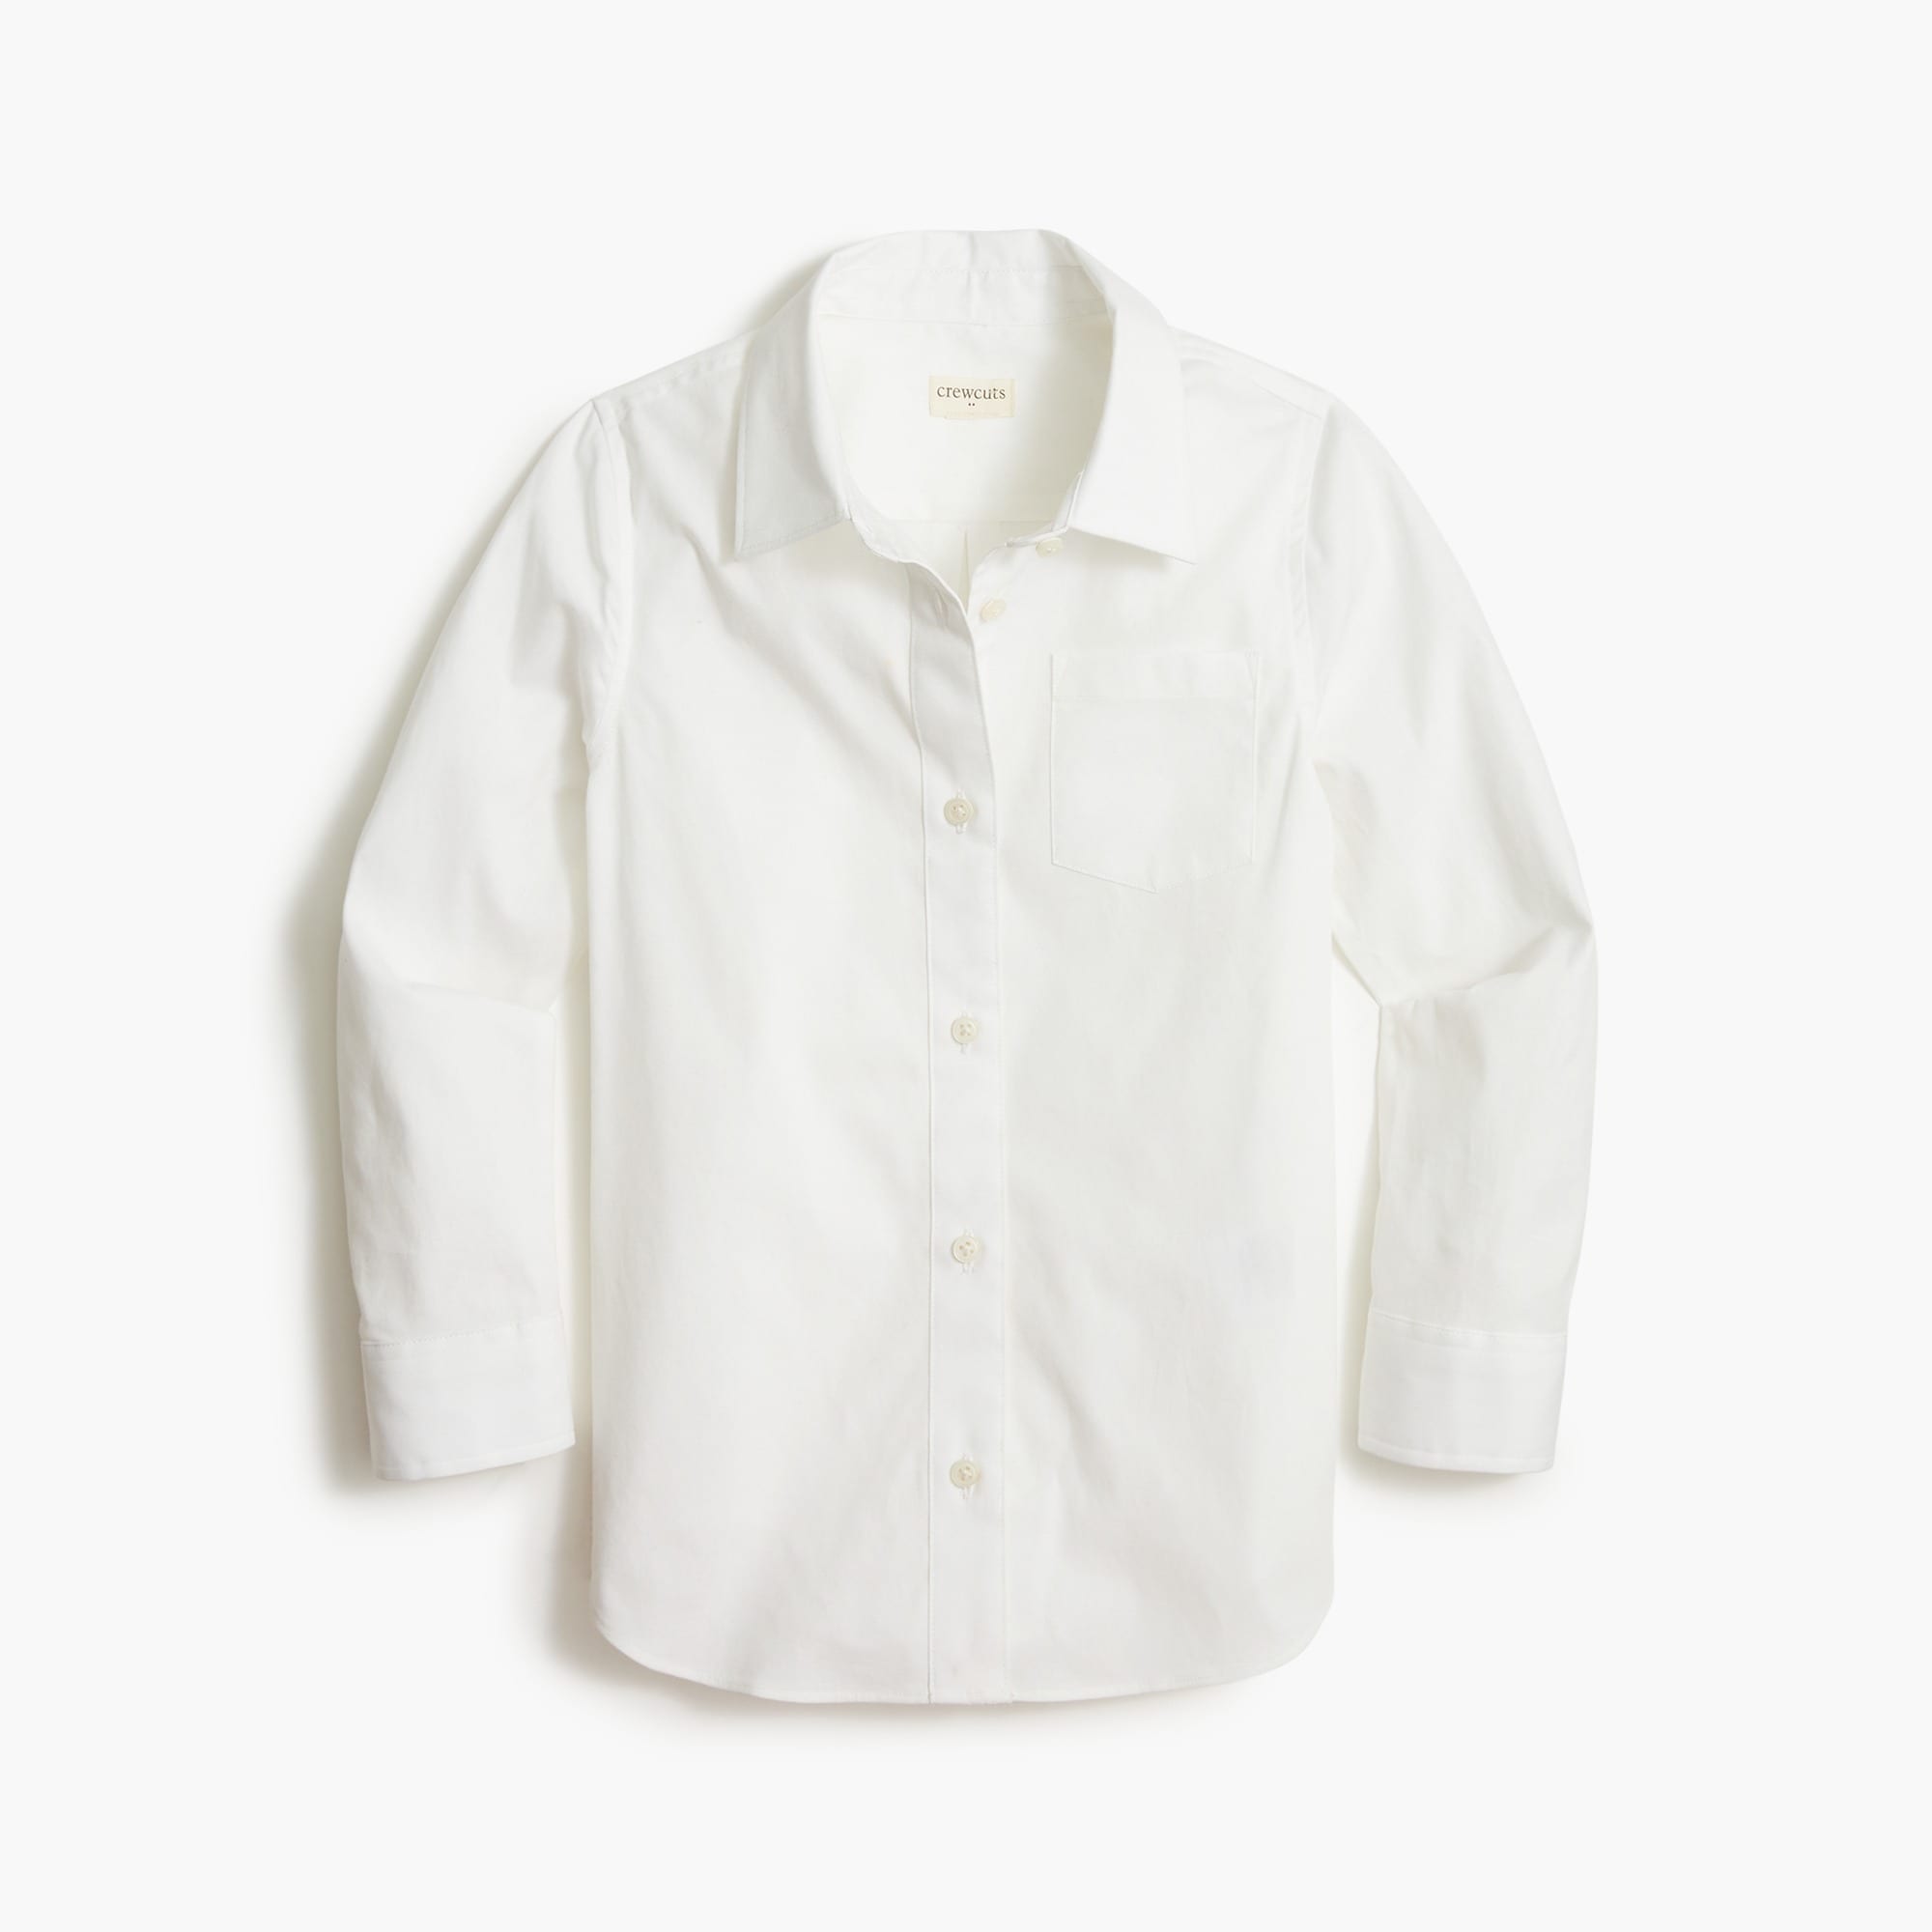 Girls' cotton-blend button-up shirt